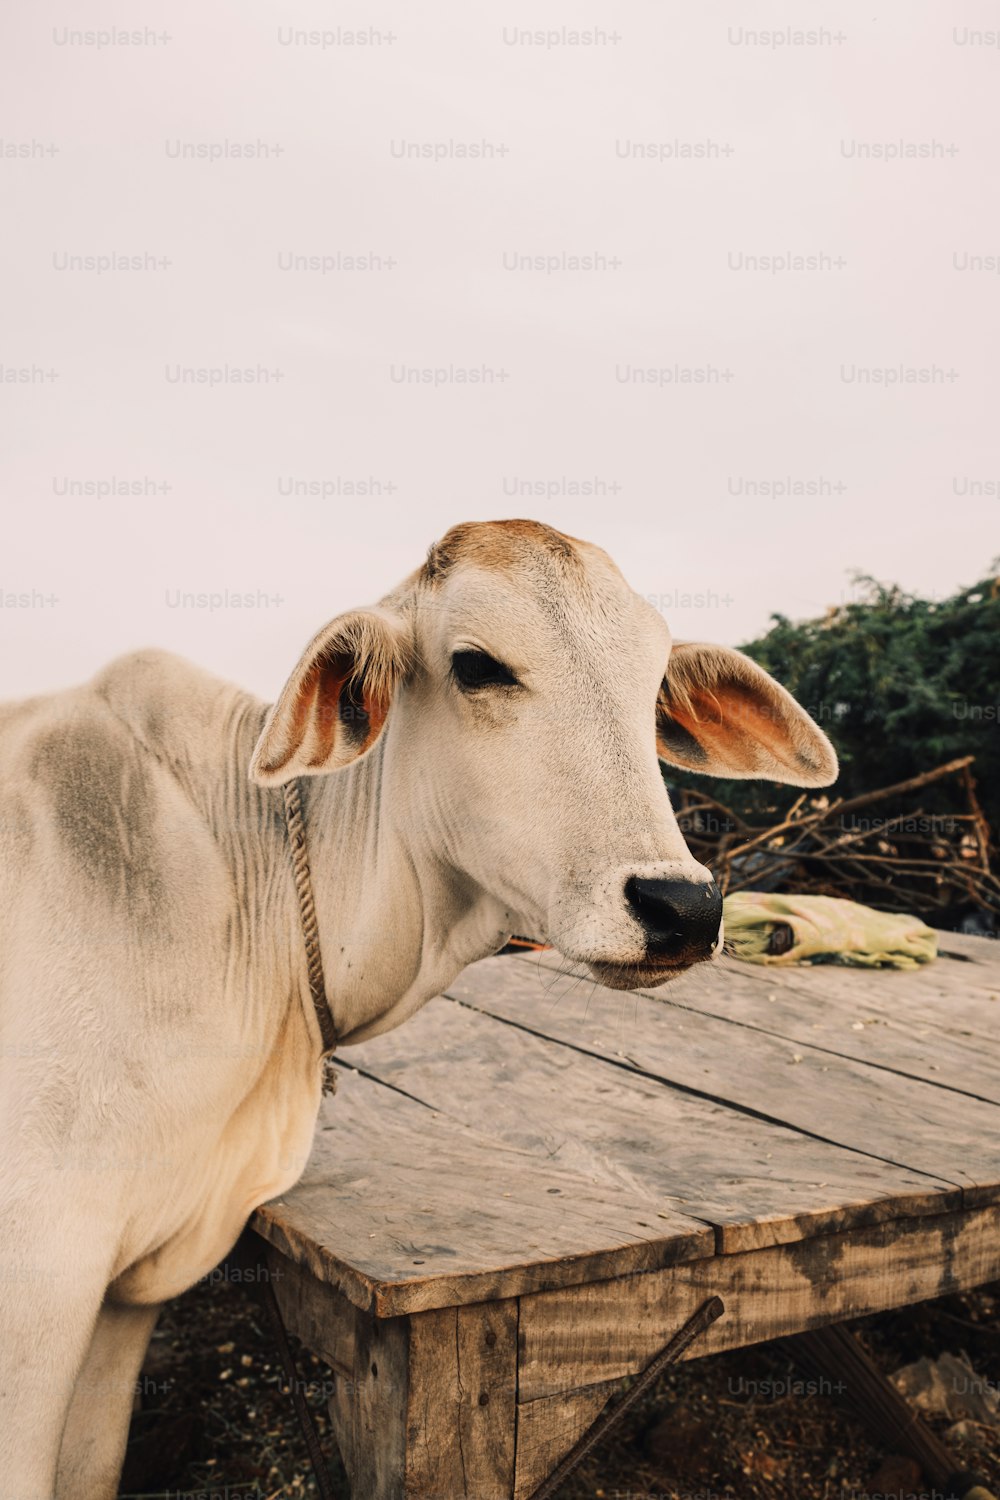 Una vaca blanca de pie encima de una mesa de madera